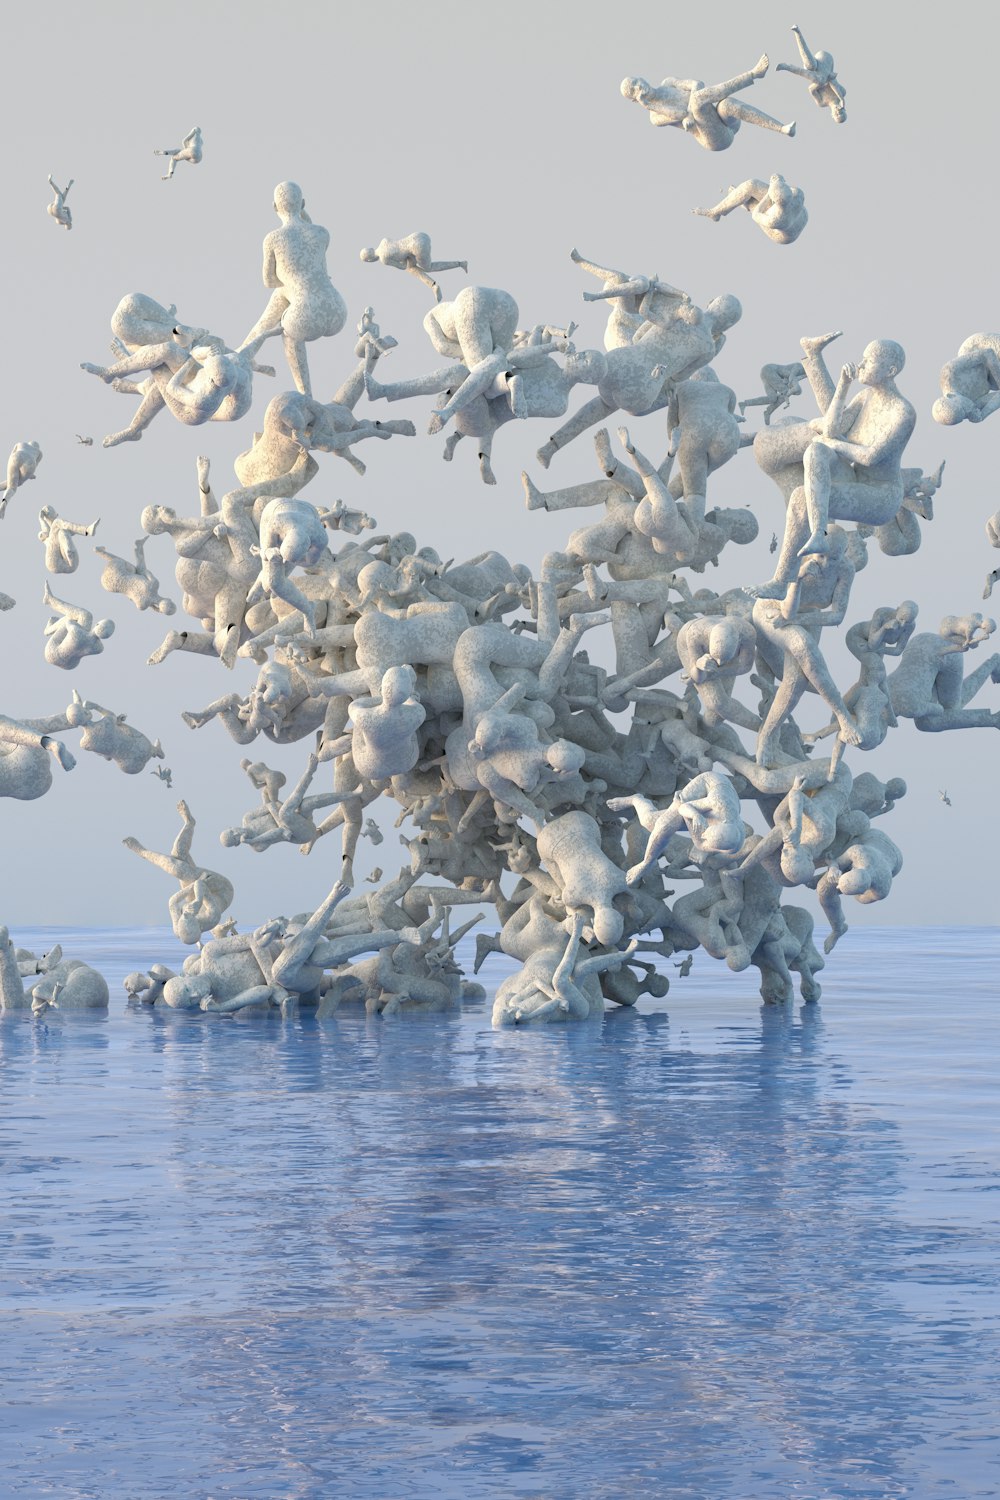 Un gran grupo de animales de peluche flotando en el agua